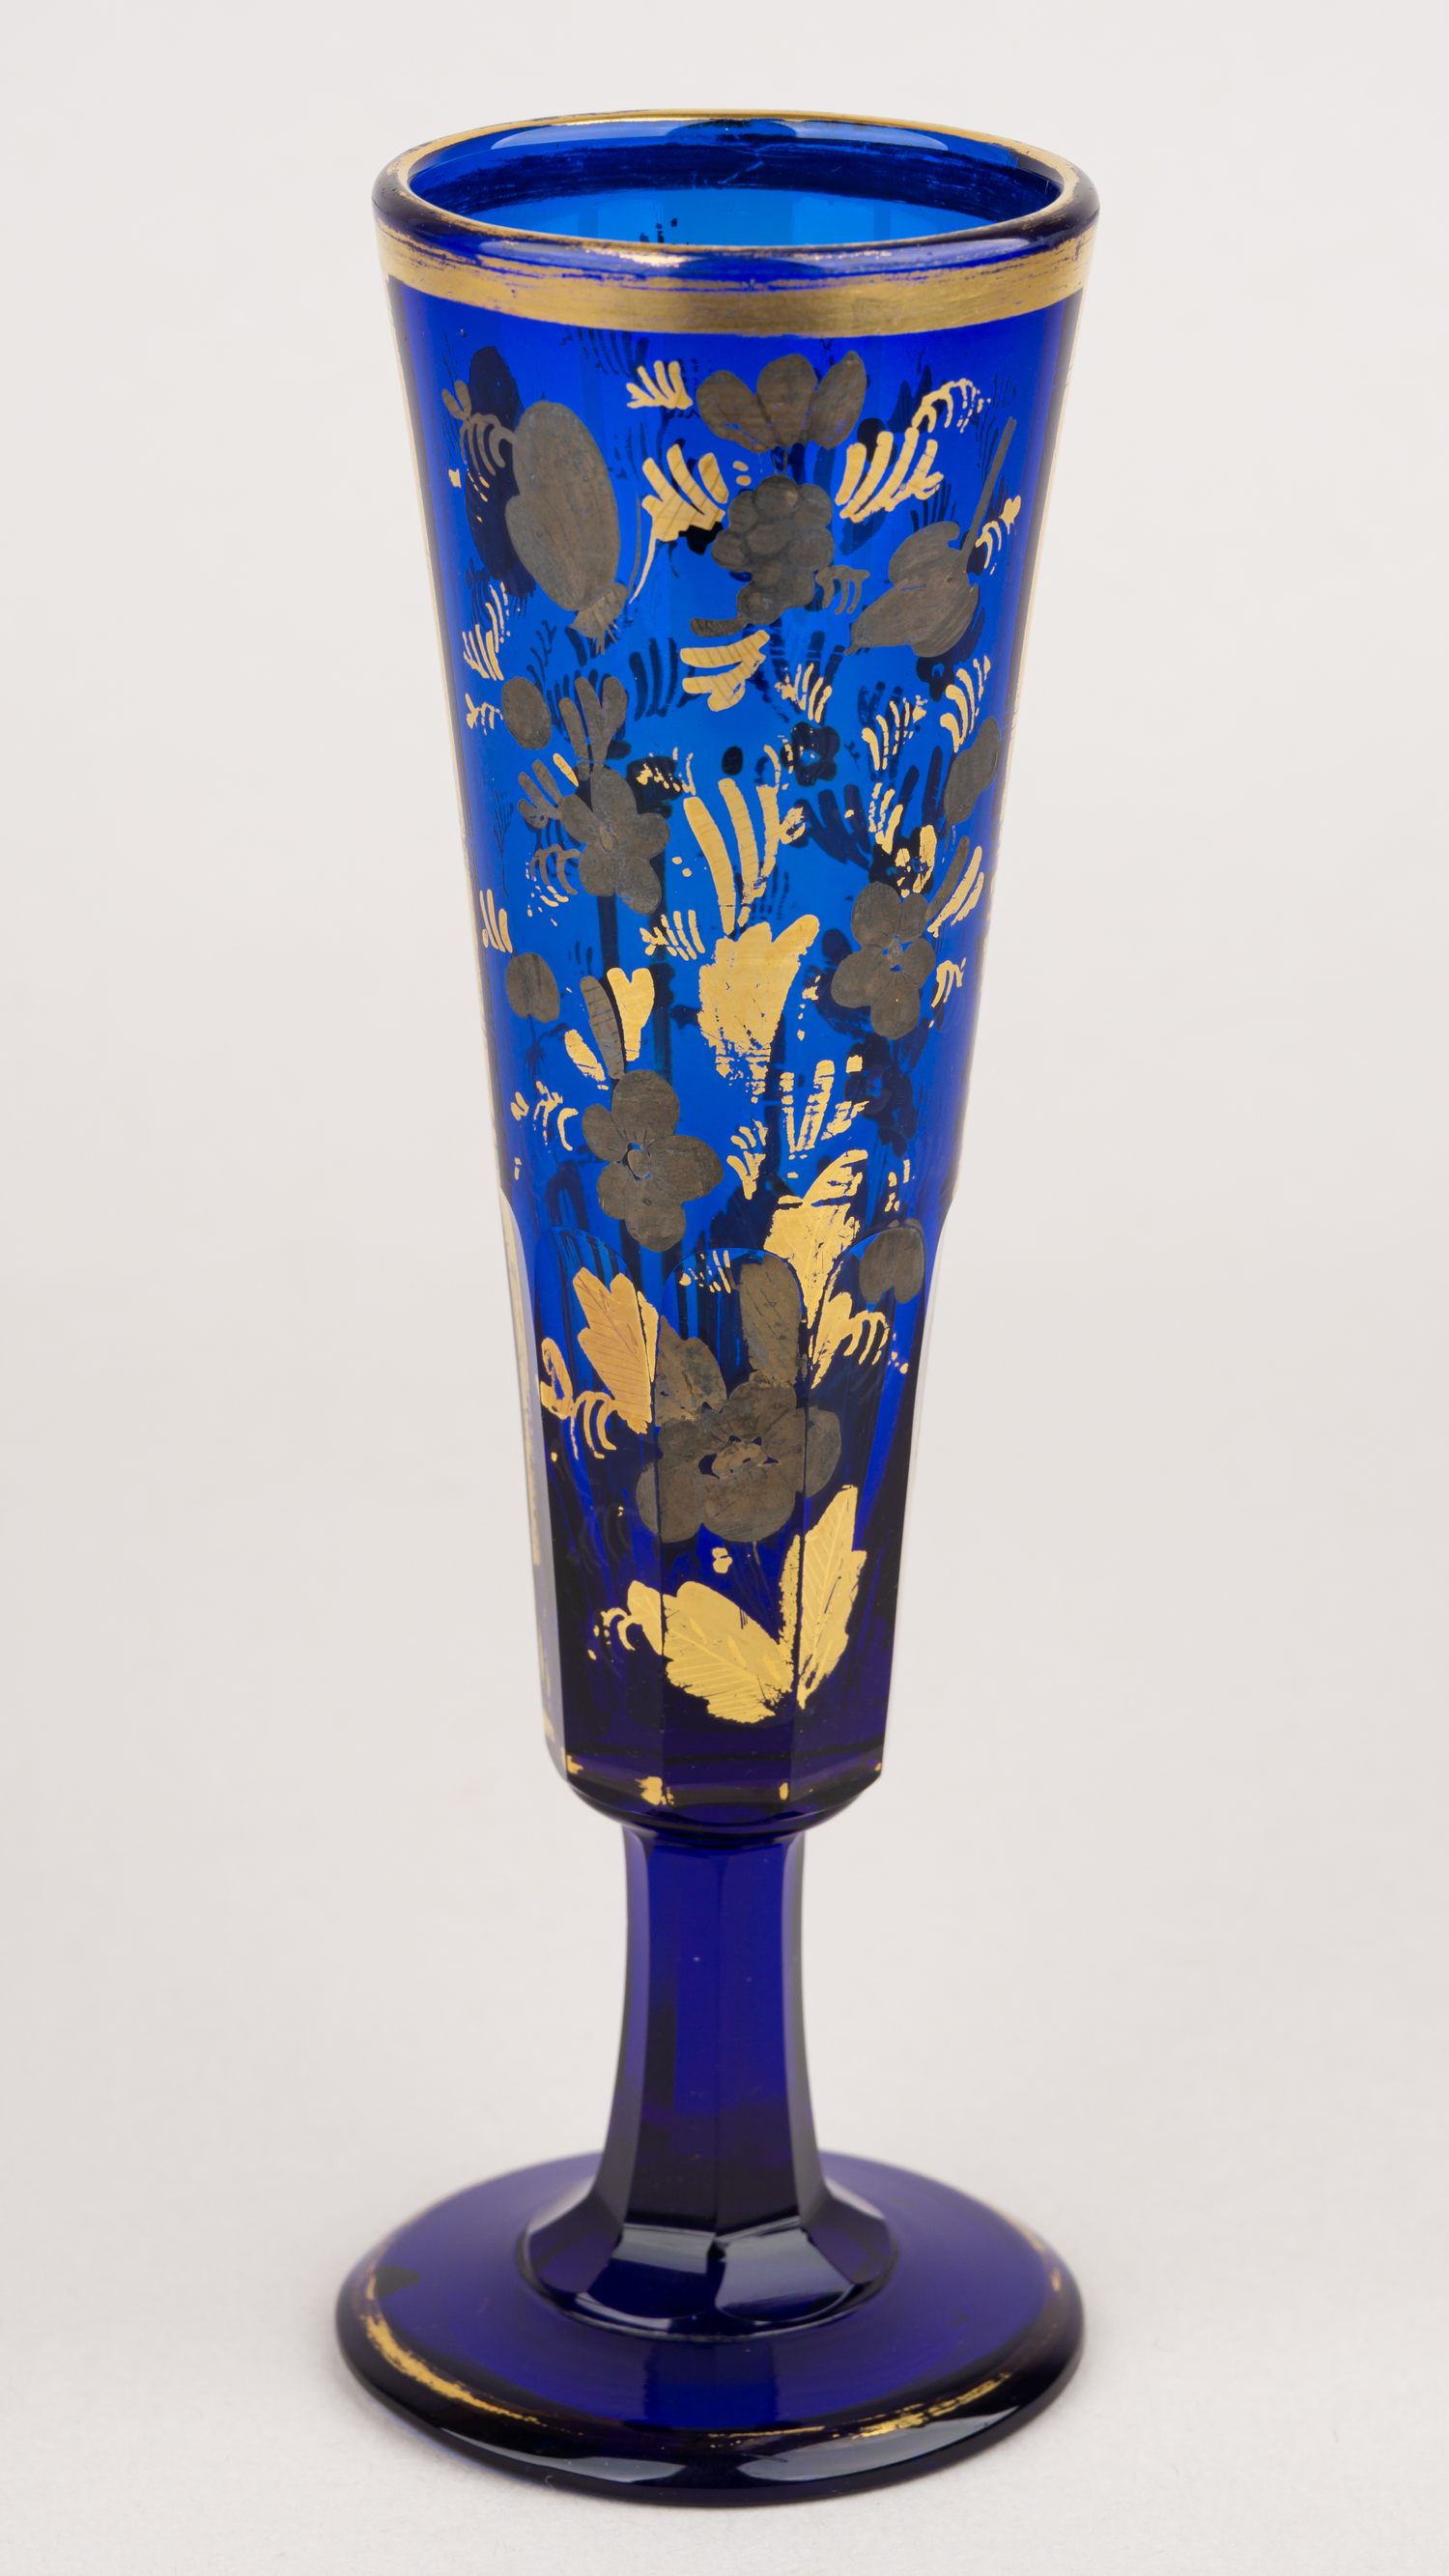 (ИСЗ) Бокал-флейта с изображением архитектуры, цветов и бабочек.<br>Россия, Санкт-Петербург, Императорский стеклянный завод, 1820-1830-ые гг.